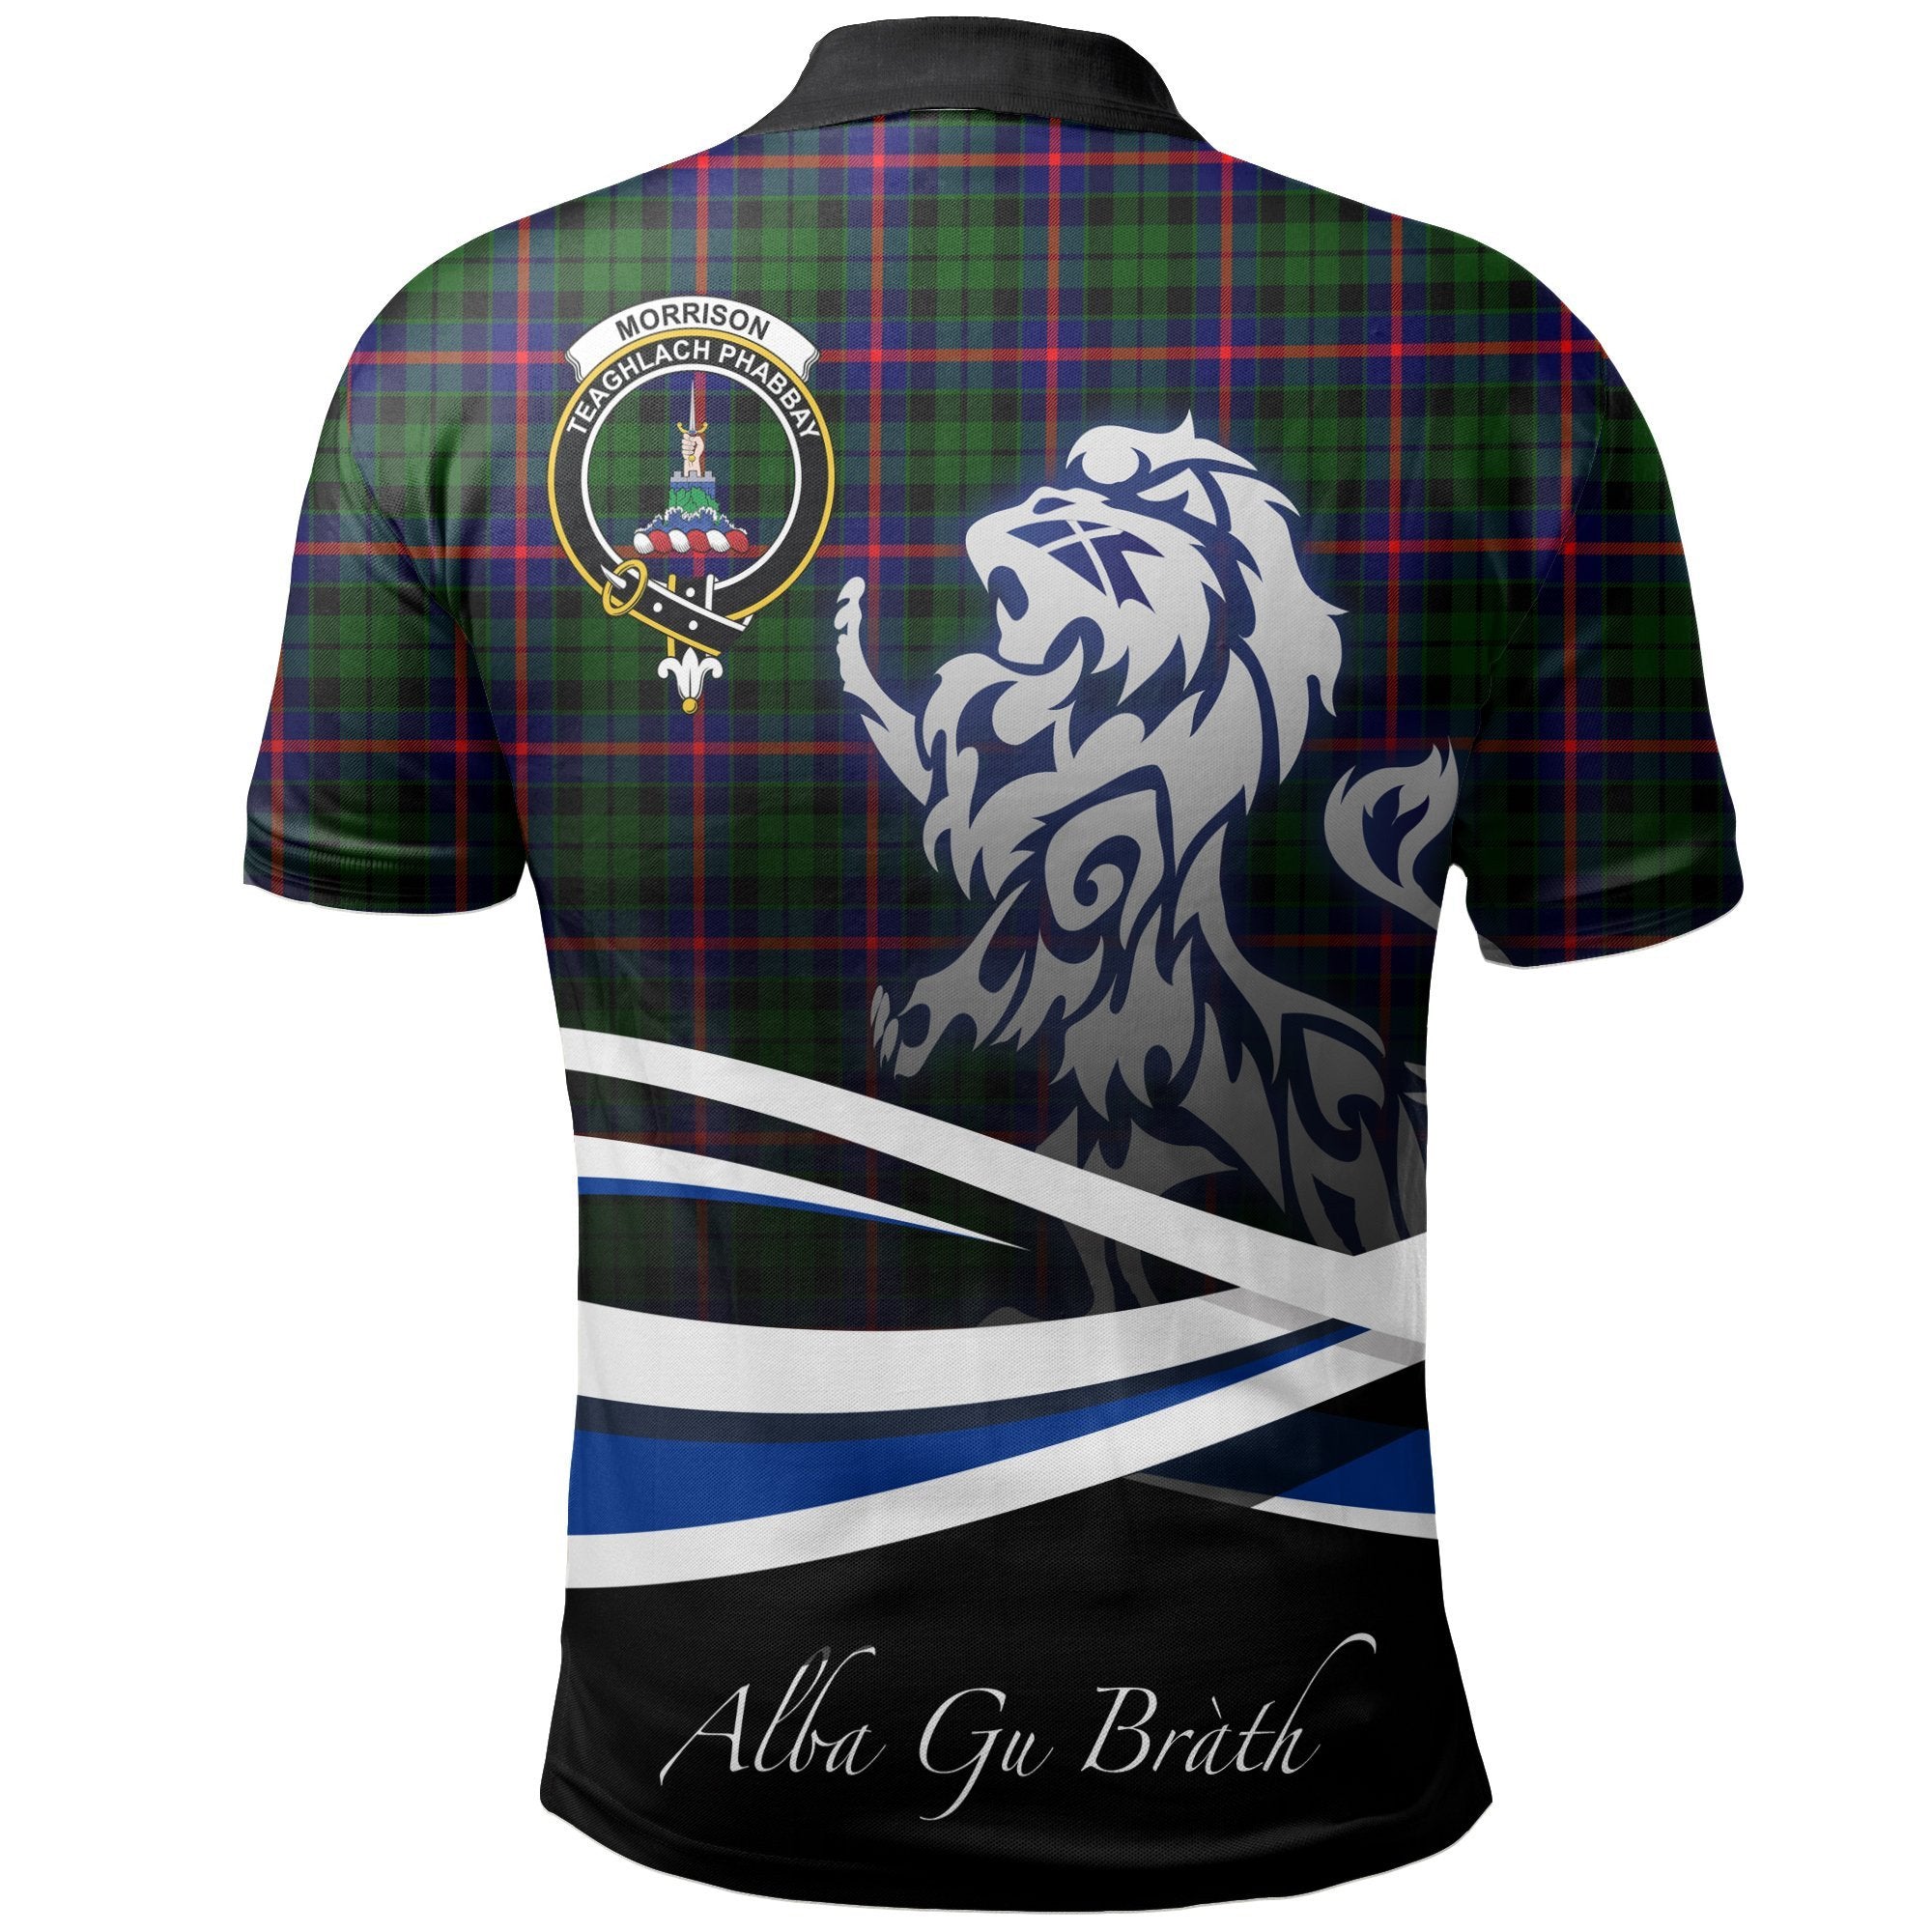 Morrison Modern Clan Polo Shirt, Scottish Tartan Morrison Modern Clans Polo Shirt Crest Lion Style